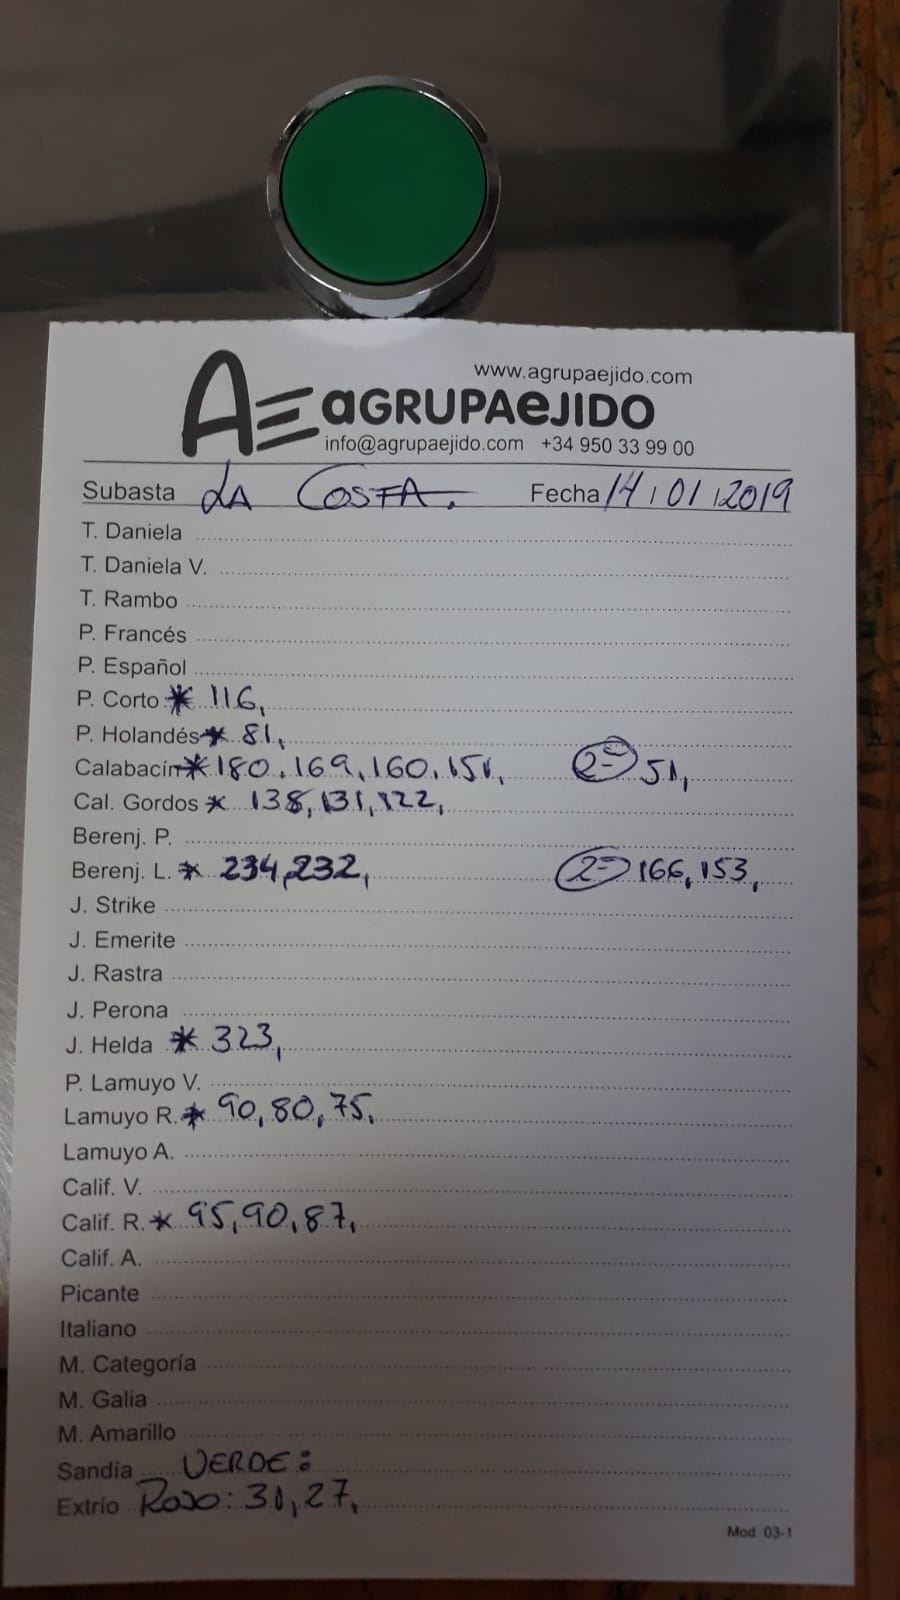 Subasta hortofrutícola AgrupaEjido La Costa 14 de Enero 2019